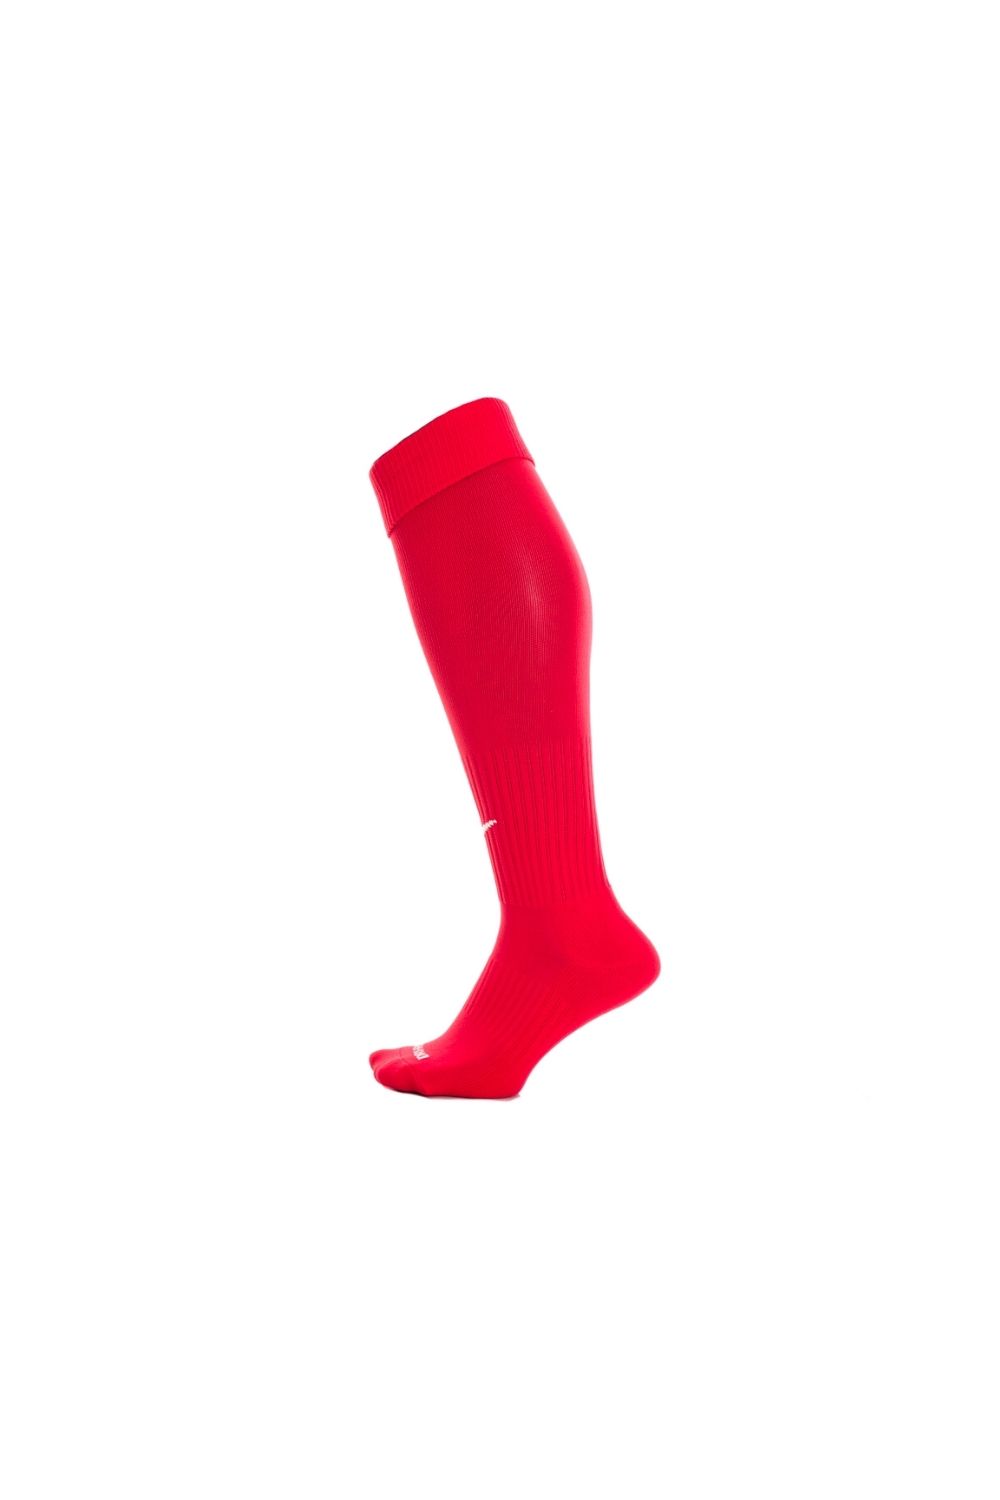 NIKE - Ανδρικές κάλτσες football NIKE CLASSIC II CUSH OTC -TEAM κόκκινες